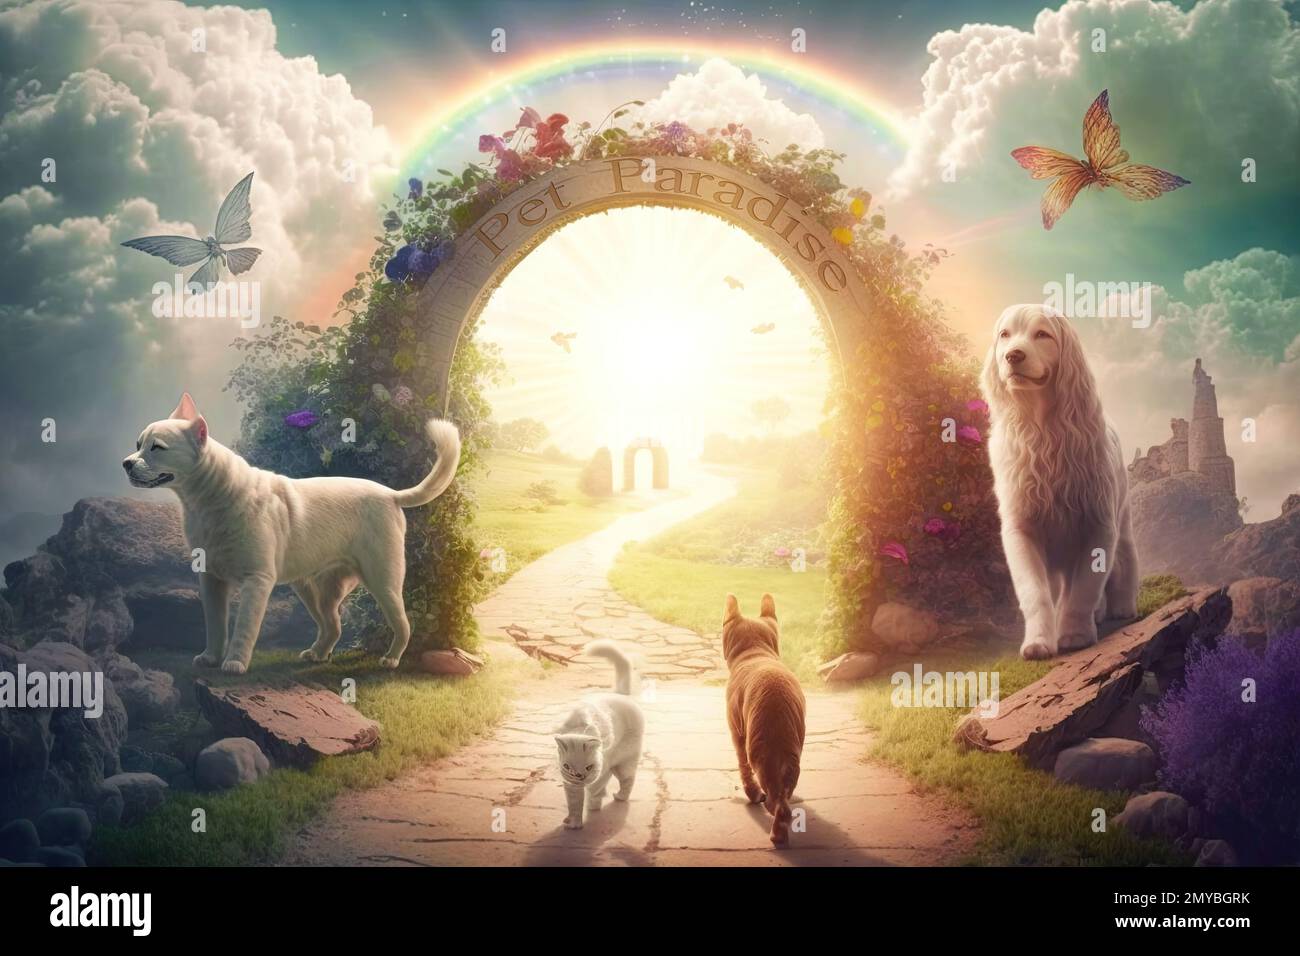 https://c8.alamy.com/compes/2mybgrk/paraiso-para-perros-y-gatos-donde-las-mascotas-corren-y-juegan-en-el-hermoso-jardin-de-hadas-de-color-arco-iris-nubes-etereas-y-sol-despues-de-la-muerte-los-animales-viven-con-2mybgrk.jpg